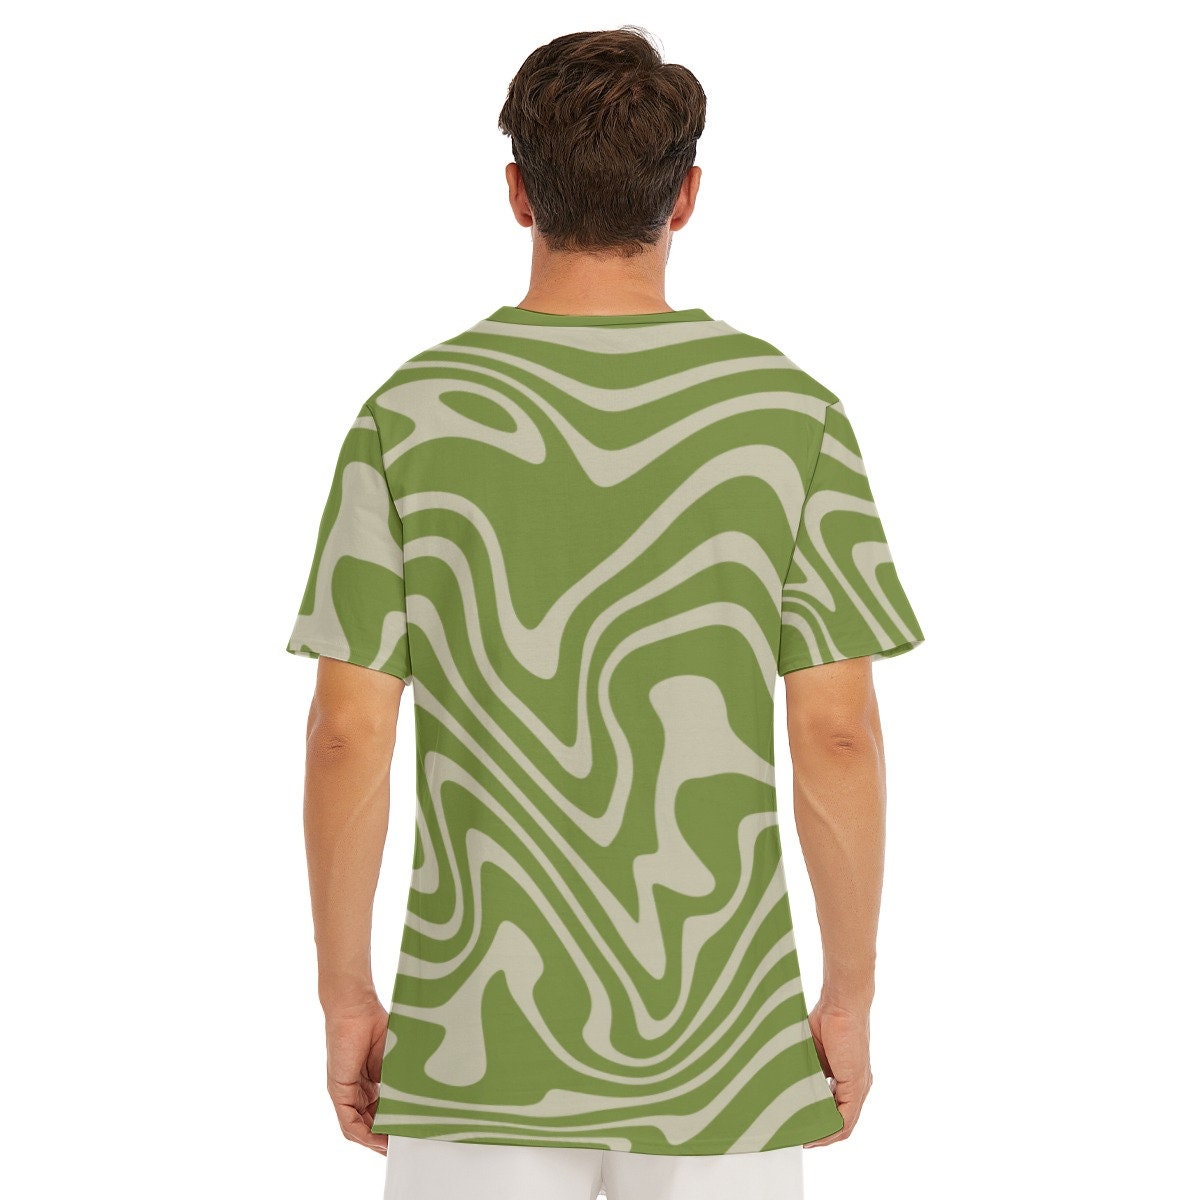 Retro T-Shirt Men, 100% Cotton T-shirt, Men's Green Top, Vintage style t-shirt, 70s Style Top, Stripe T-shirt Men